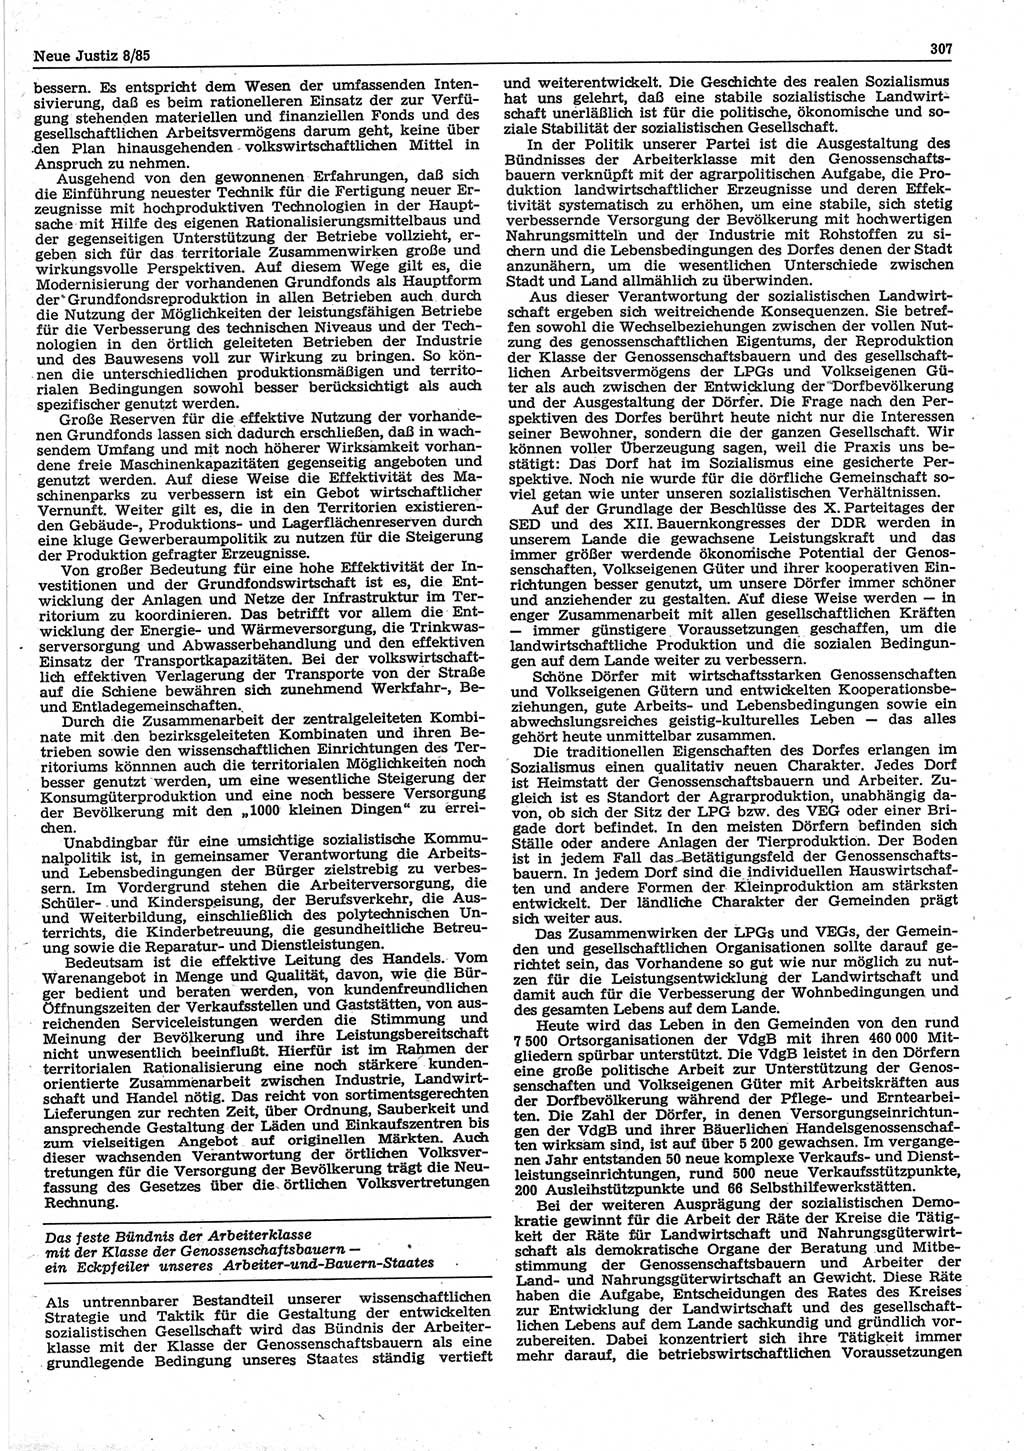 Neue Justiz (NJ), Zeitschrift für sozialistisches Recht und Gesetzlichkeit [Deutsche Demokratische Republik (DDR)], 39. Jahrgang 1985, Seite 307 (NJ DDR 1985, S. 307)